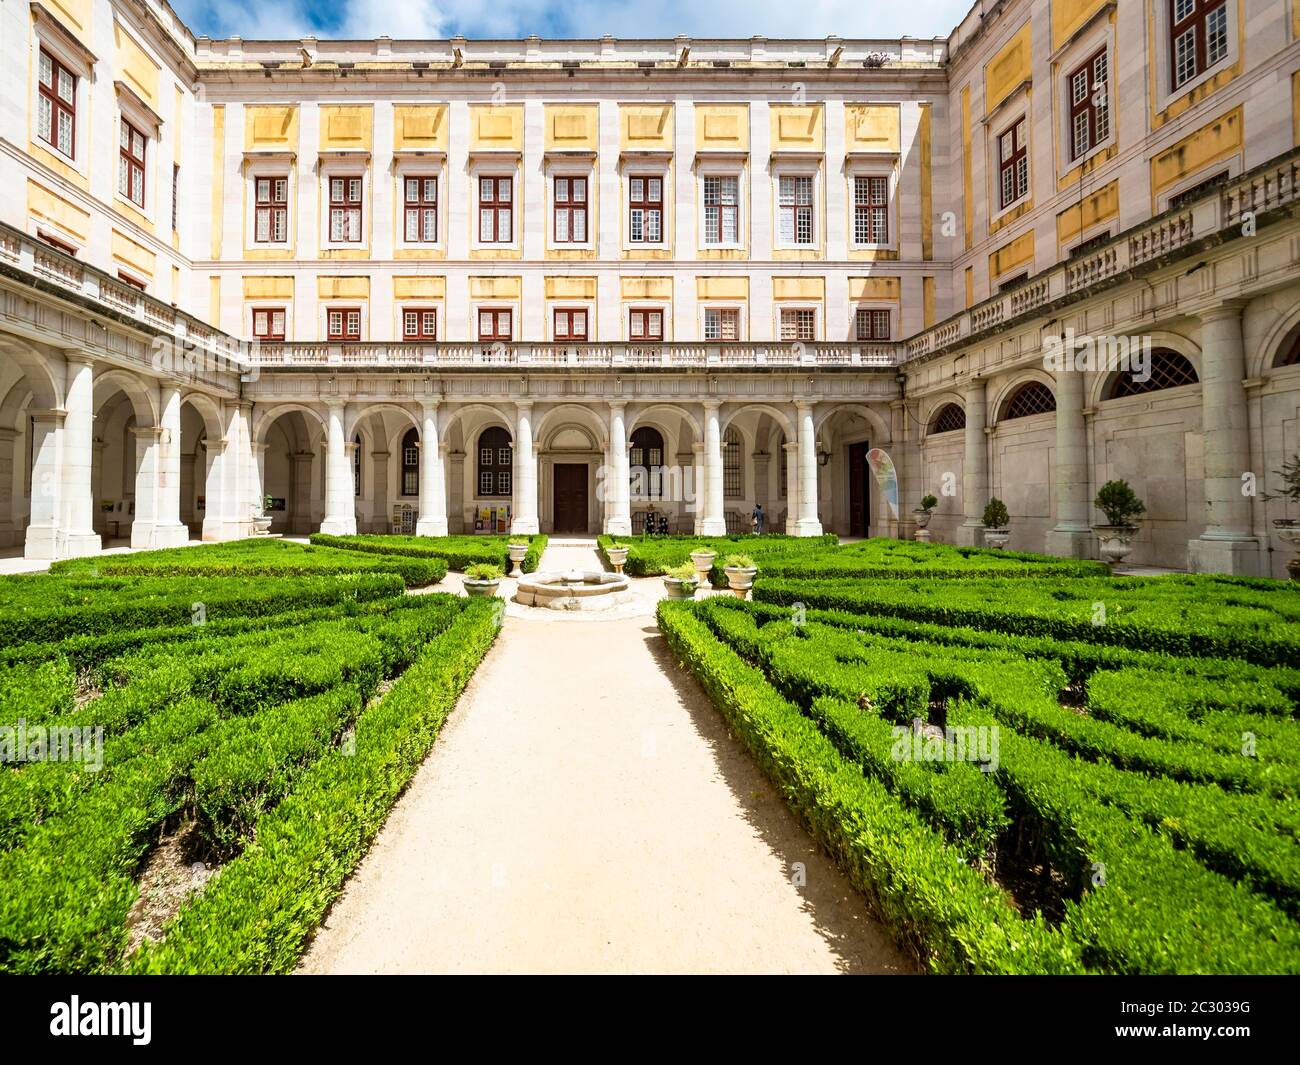 Mafra National Palace, Mafra, Portugal Stock Photo